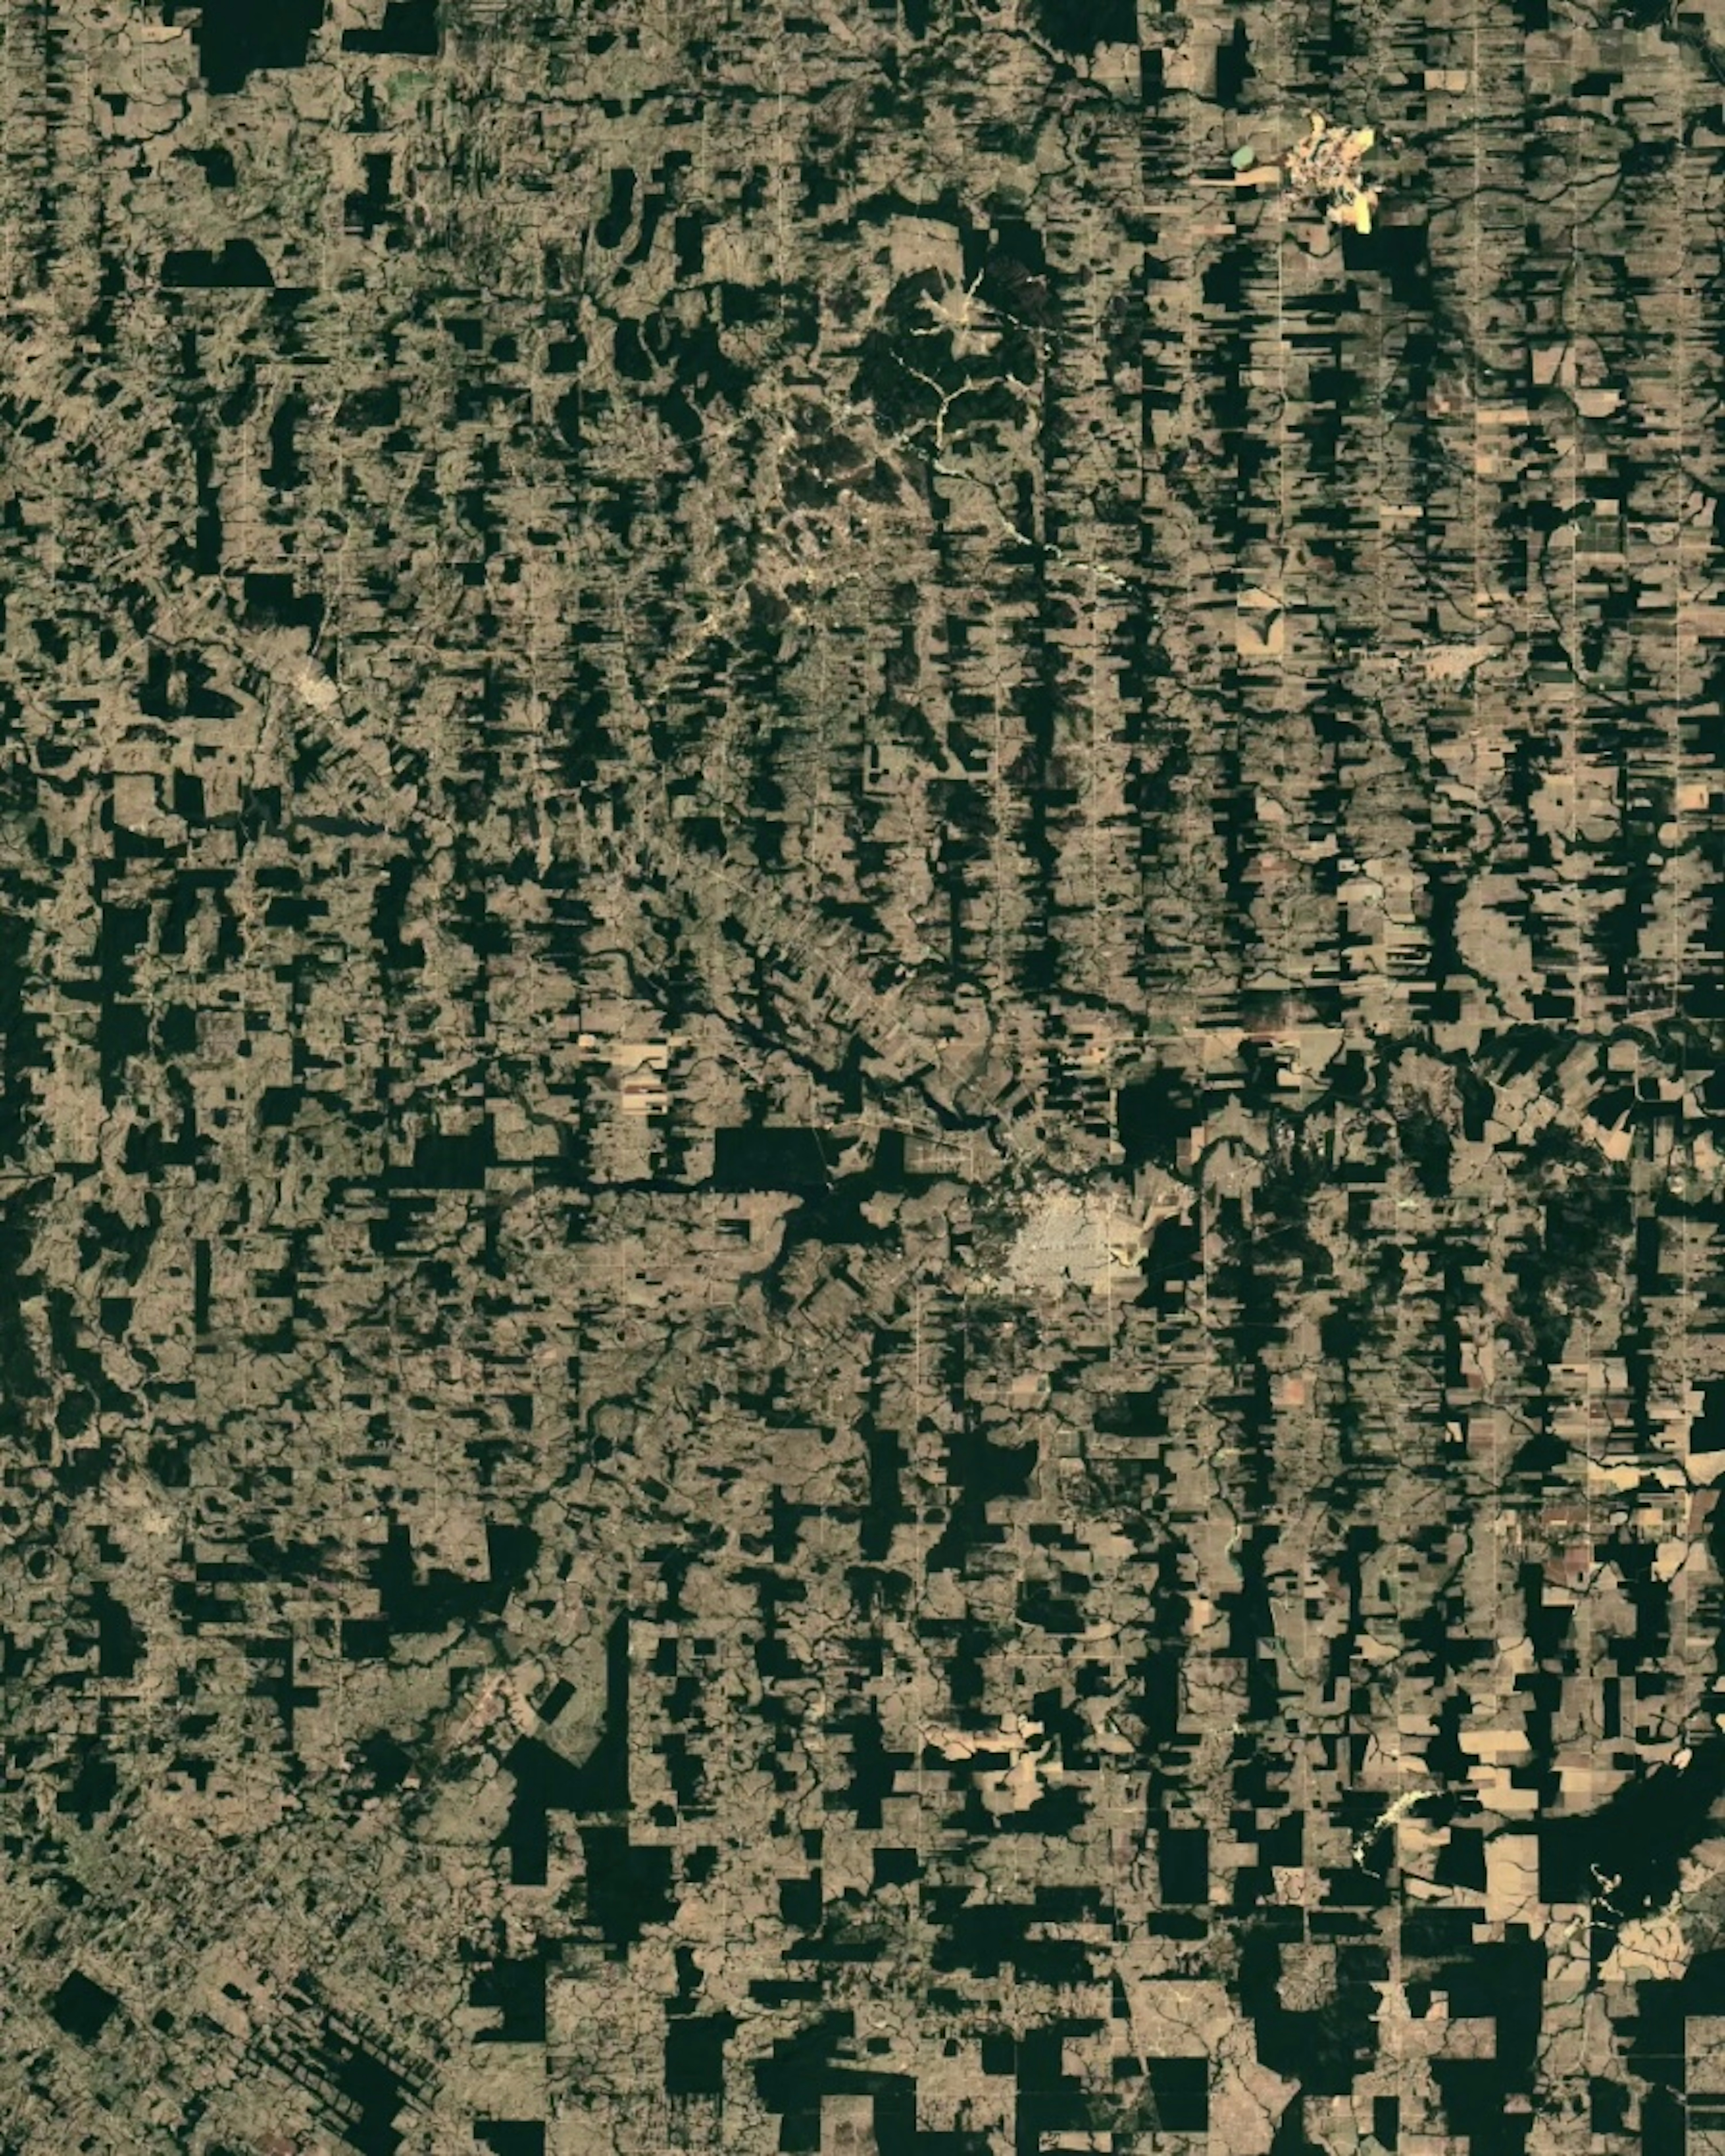 Brazil Deforestation 